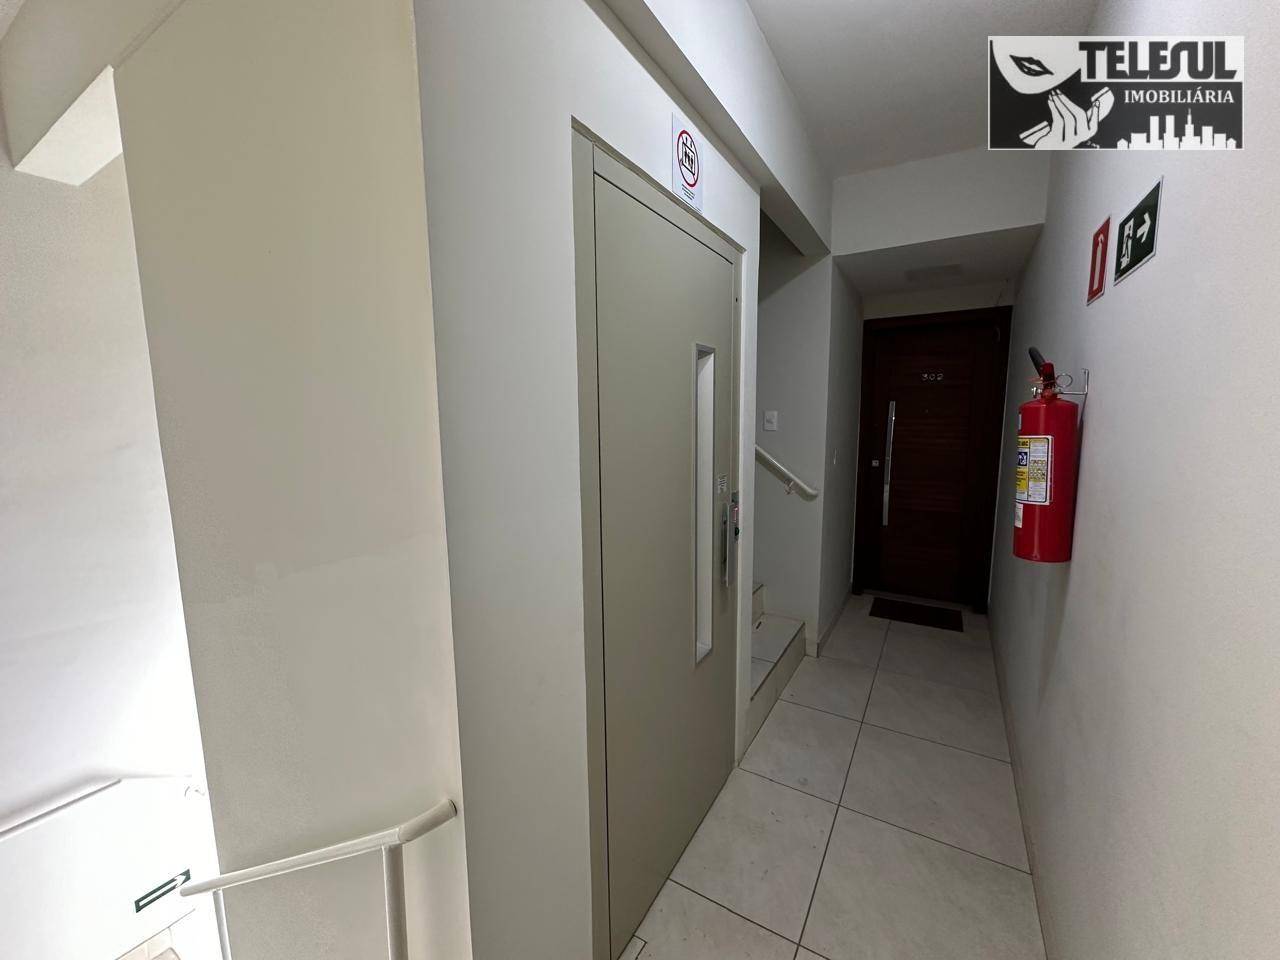 Apartamento, 3 quartos, 101 m² - Foto 4